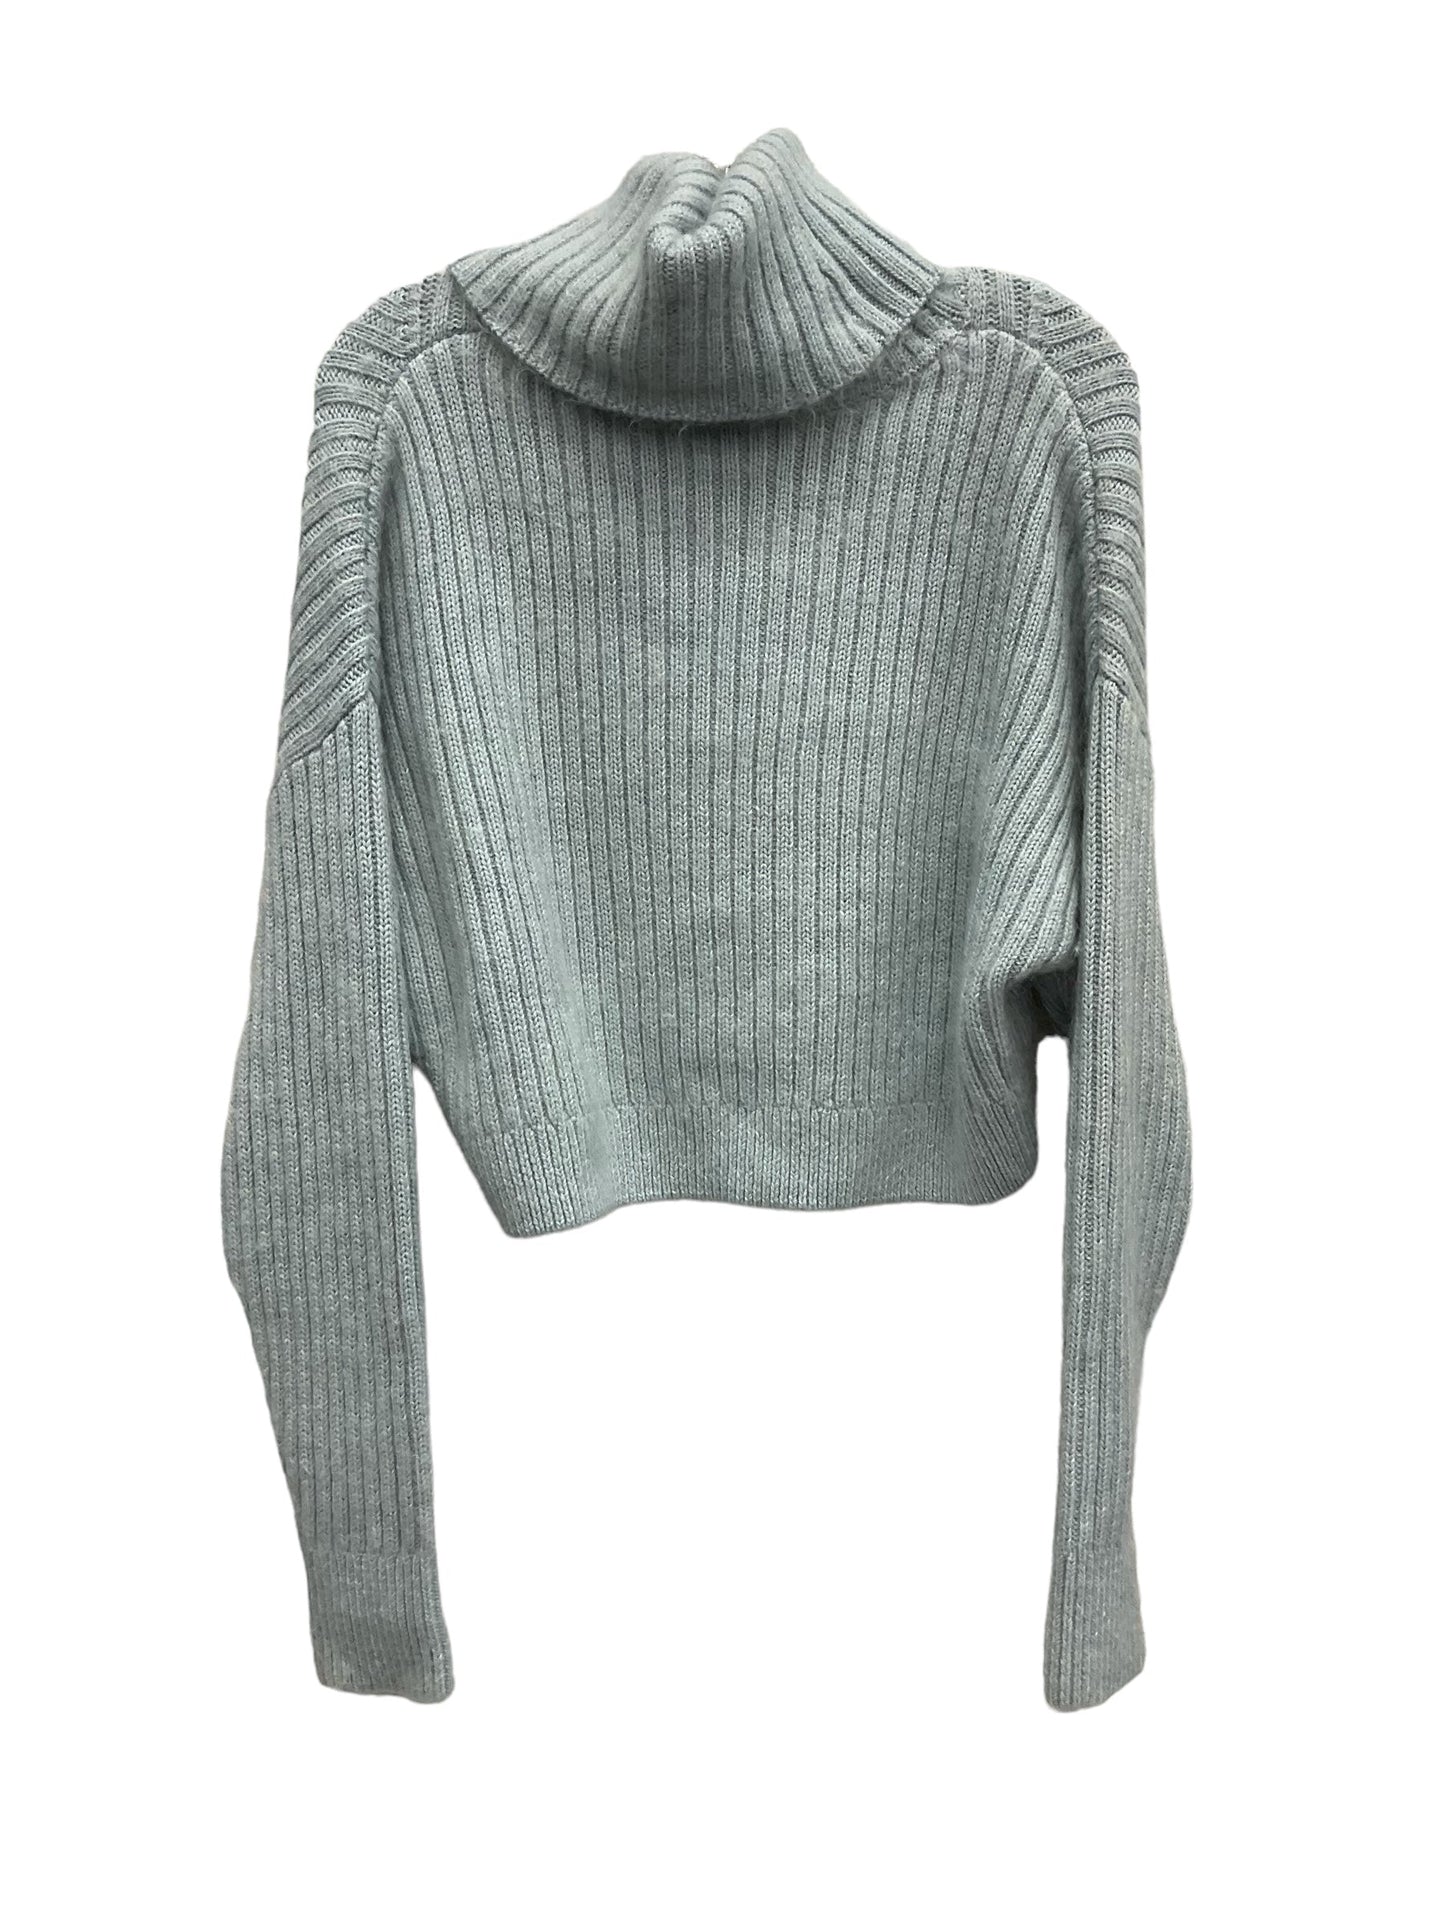 Sweater By Cma  Size: Xs